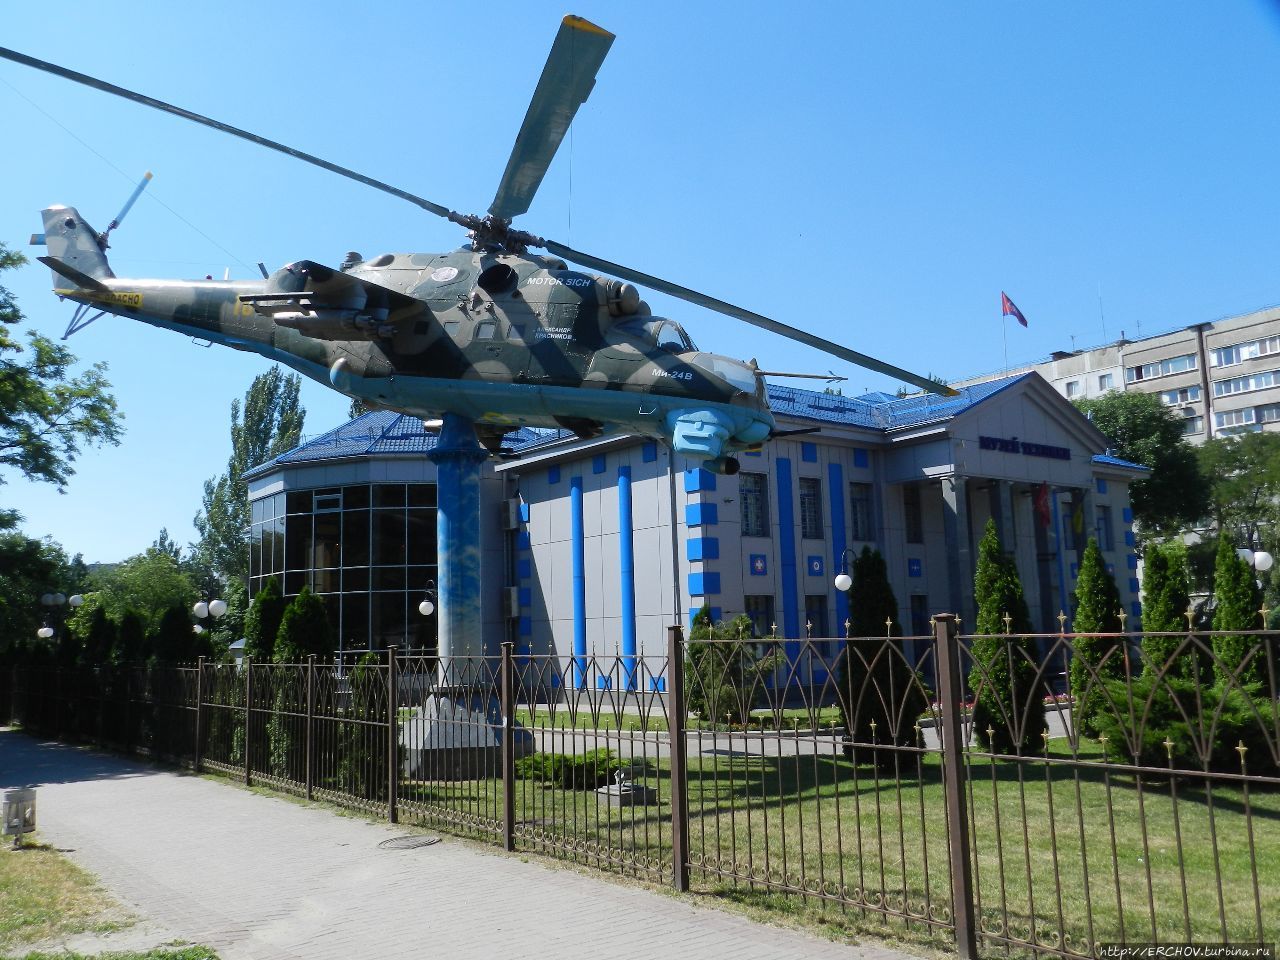 Музей моторов Запорожье, Украина